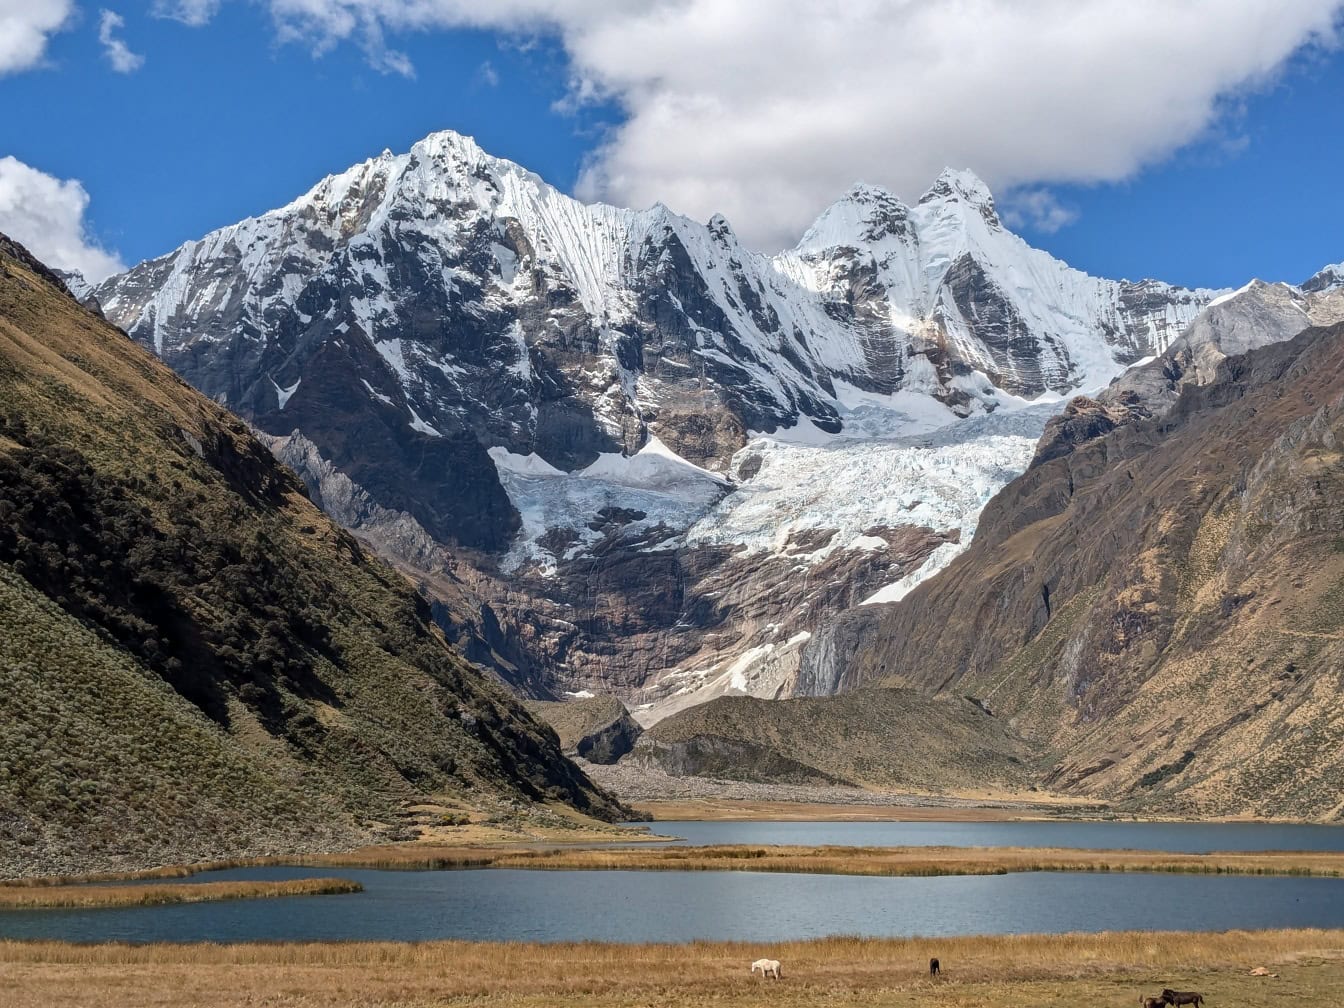 Lago em um vale com montanhas cobertas de neve na Cordilheira Huayhuash, uma cordilheira nos Andes no Peru